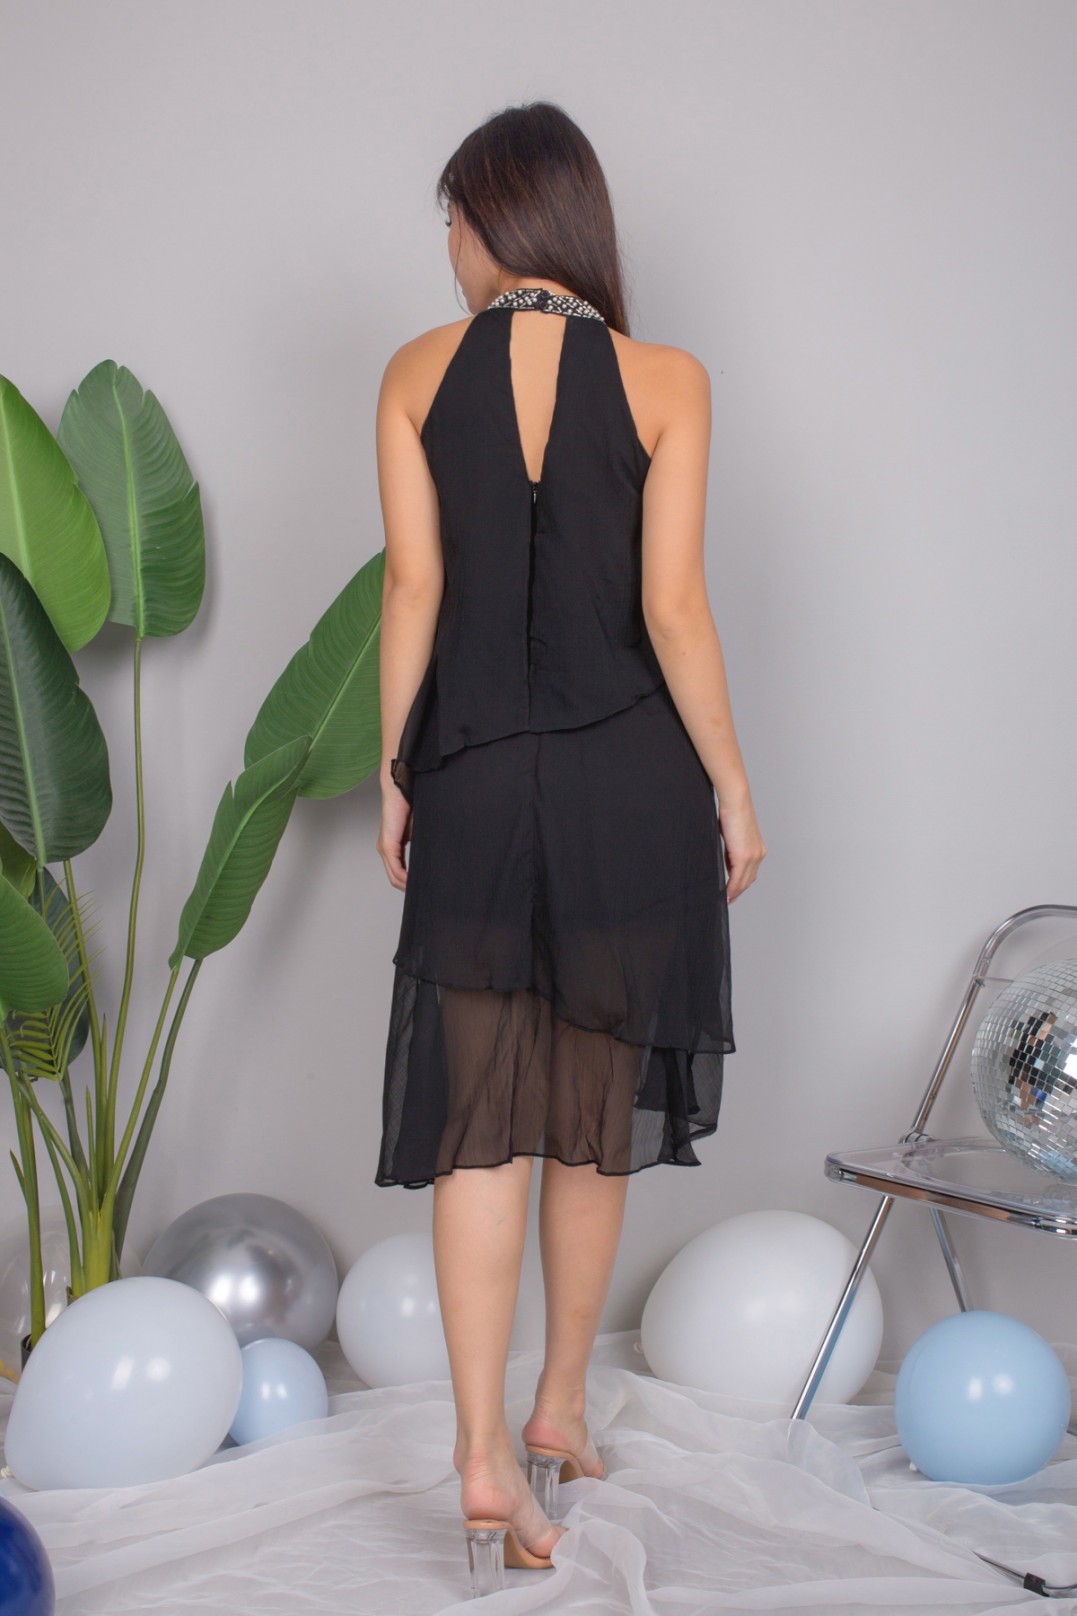 Irena Sequin Dress in Black - MGP